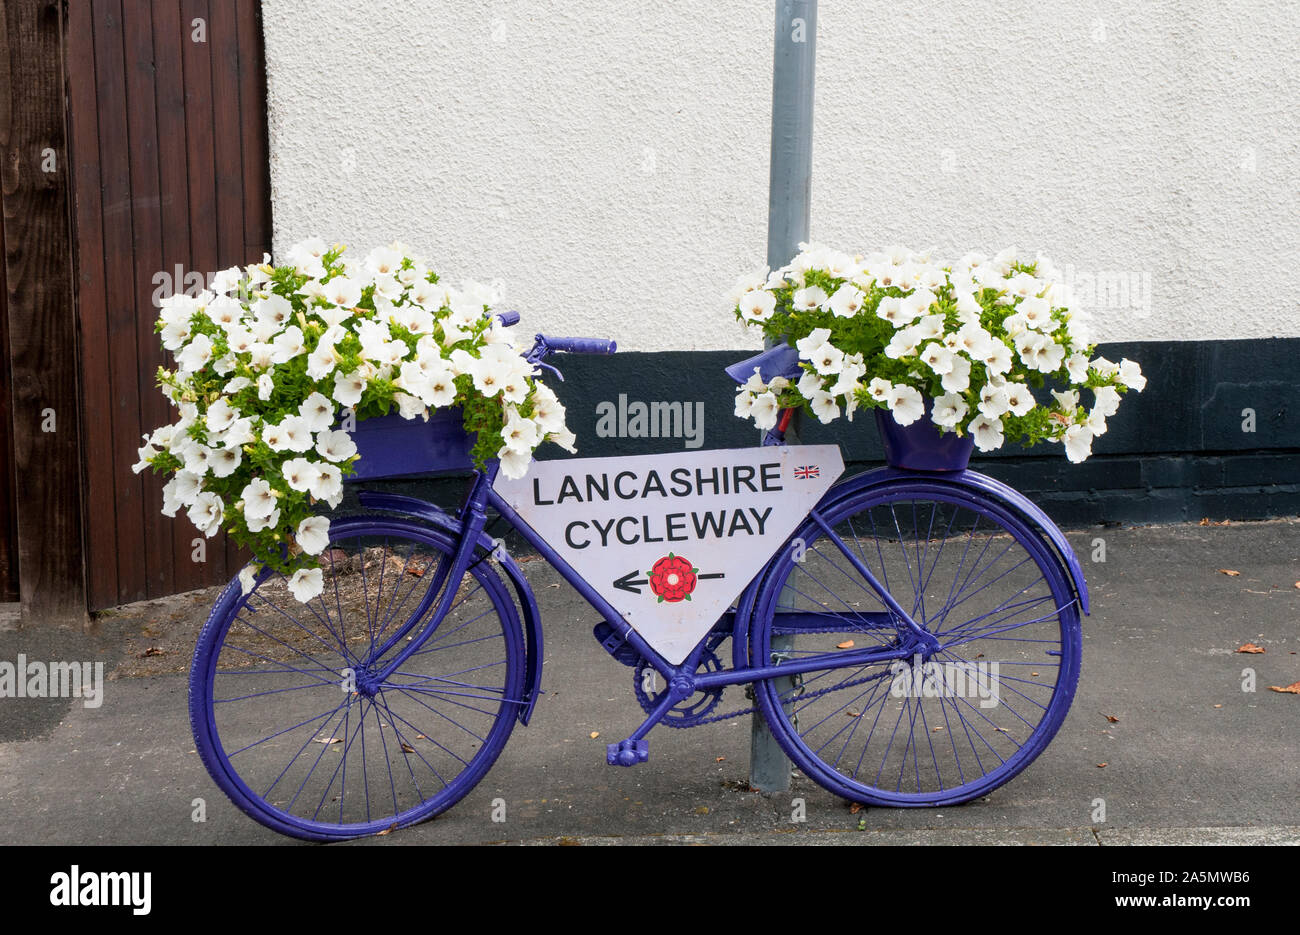 Location bord peint en bleu avec des fleurs de pétunias surfina blanc sur elle. Elswick village le mieux gardé de Lancashire England UK Banque D'Images